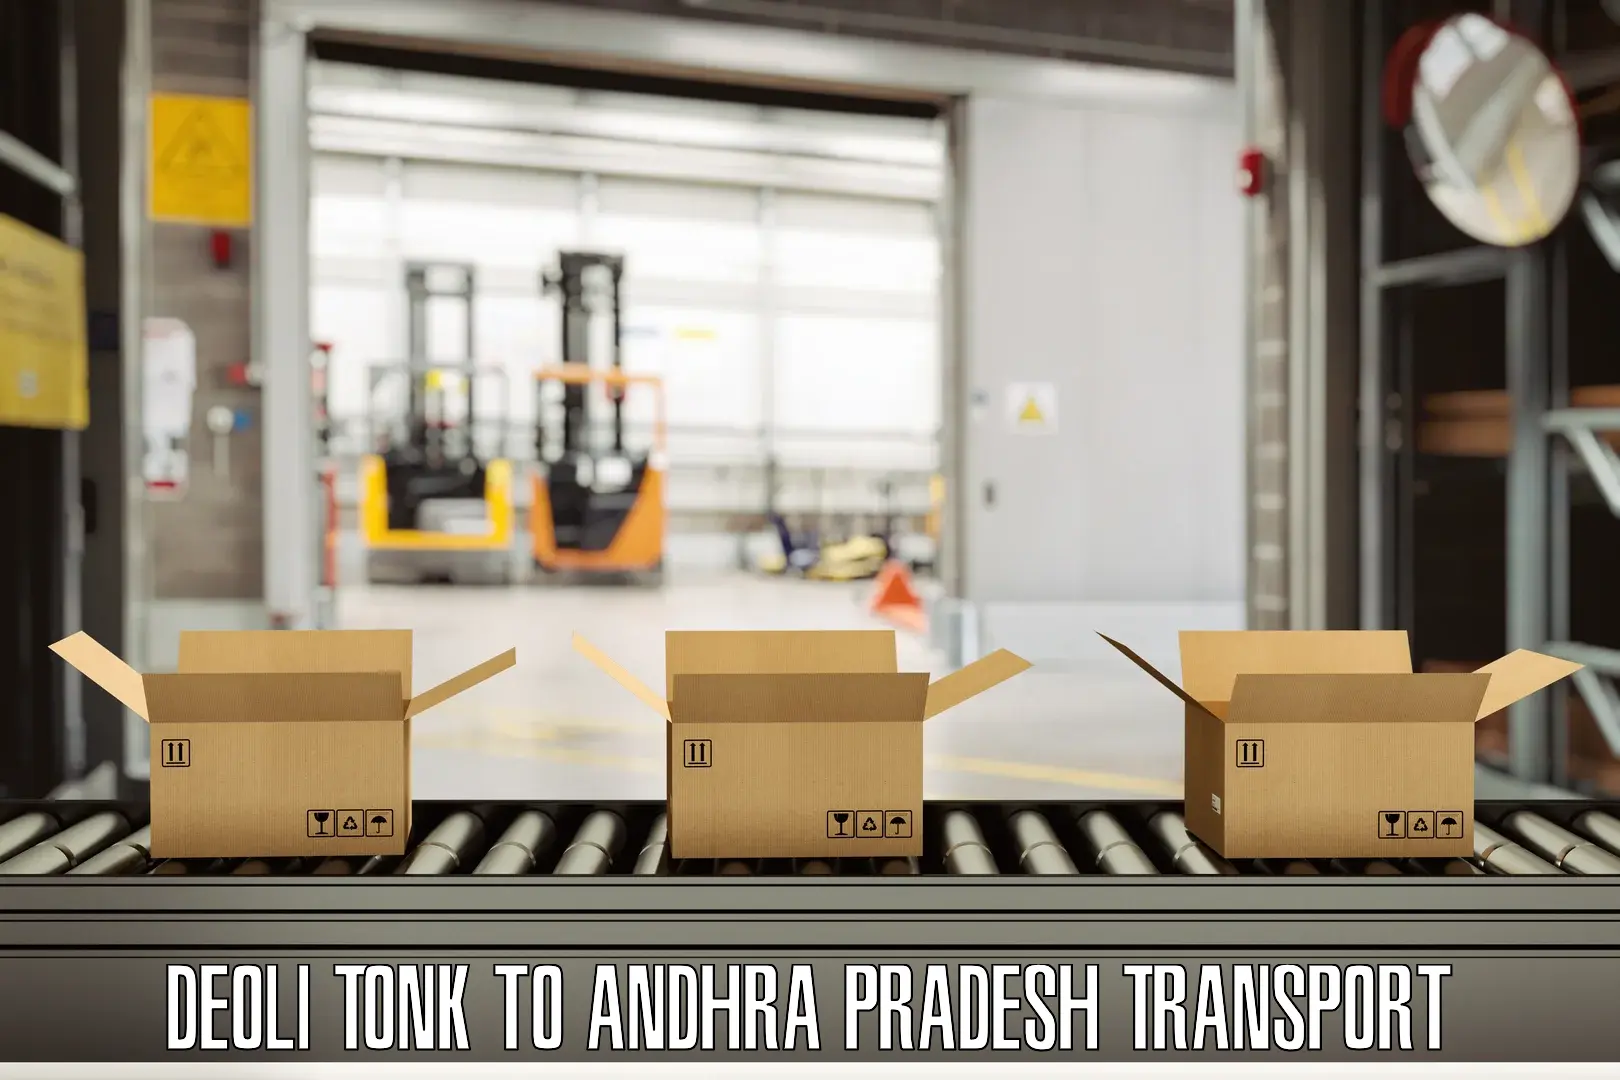 Truck transport companies in India in Deoli Tonk to Tada Tirupati